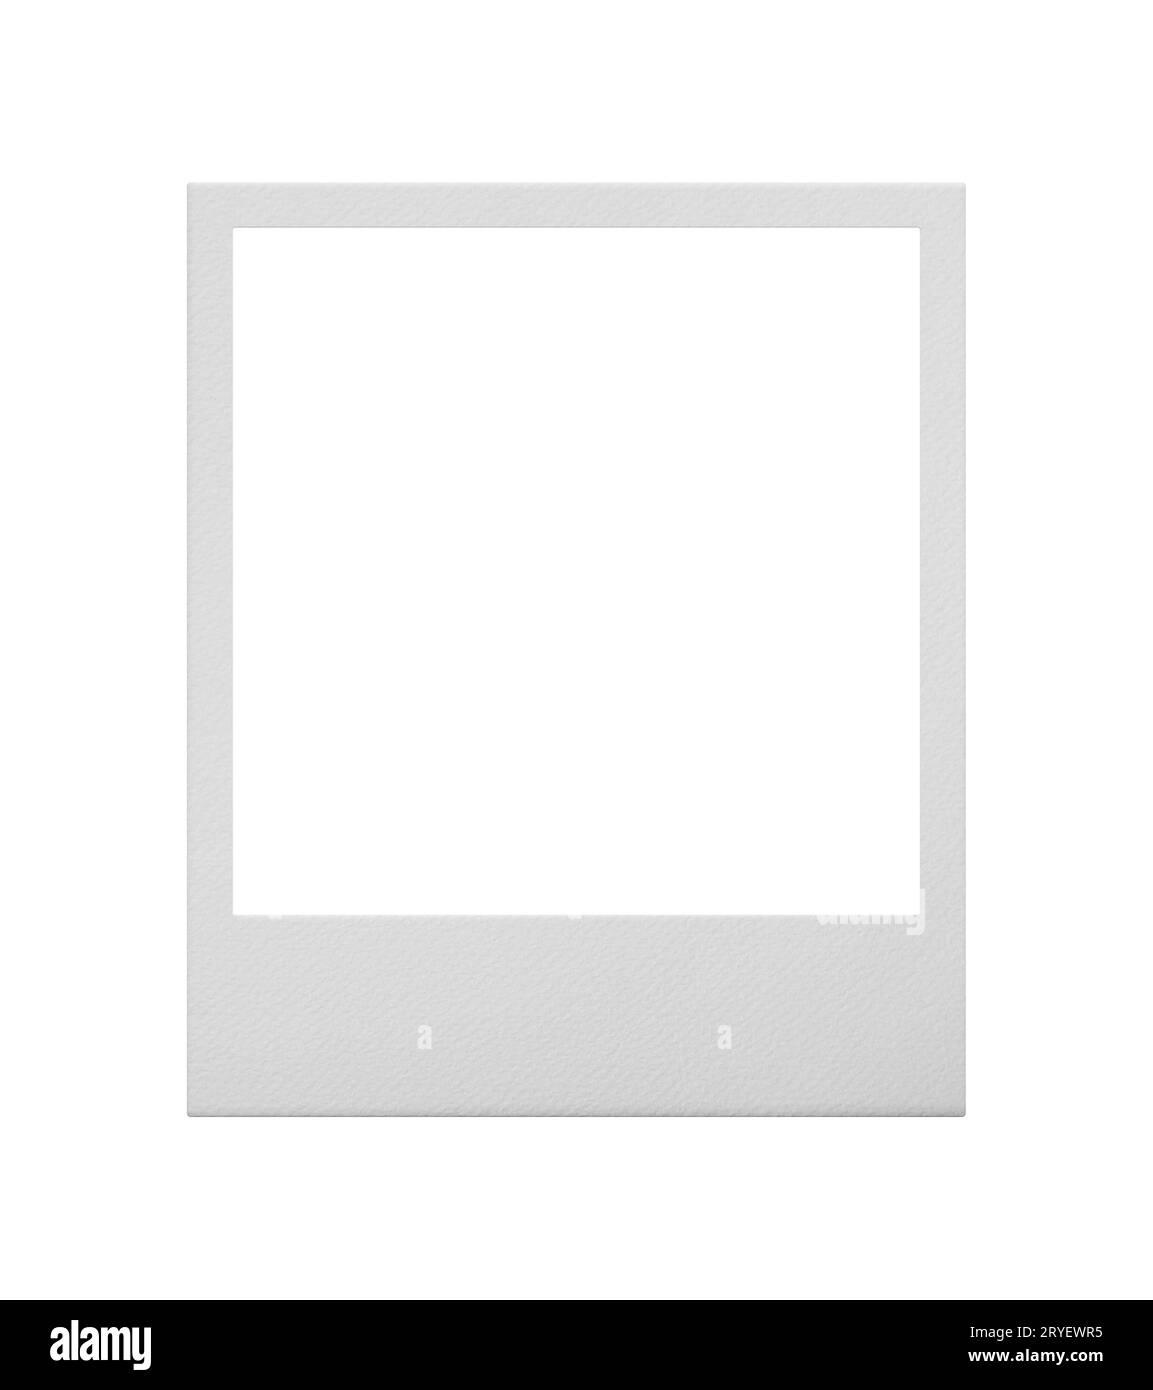 Marco de fotos polaroid vacío Imágenes de stock en blanco y negro